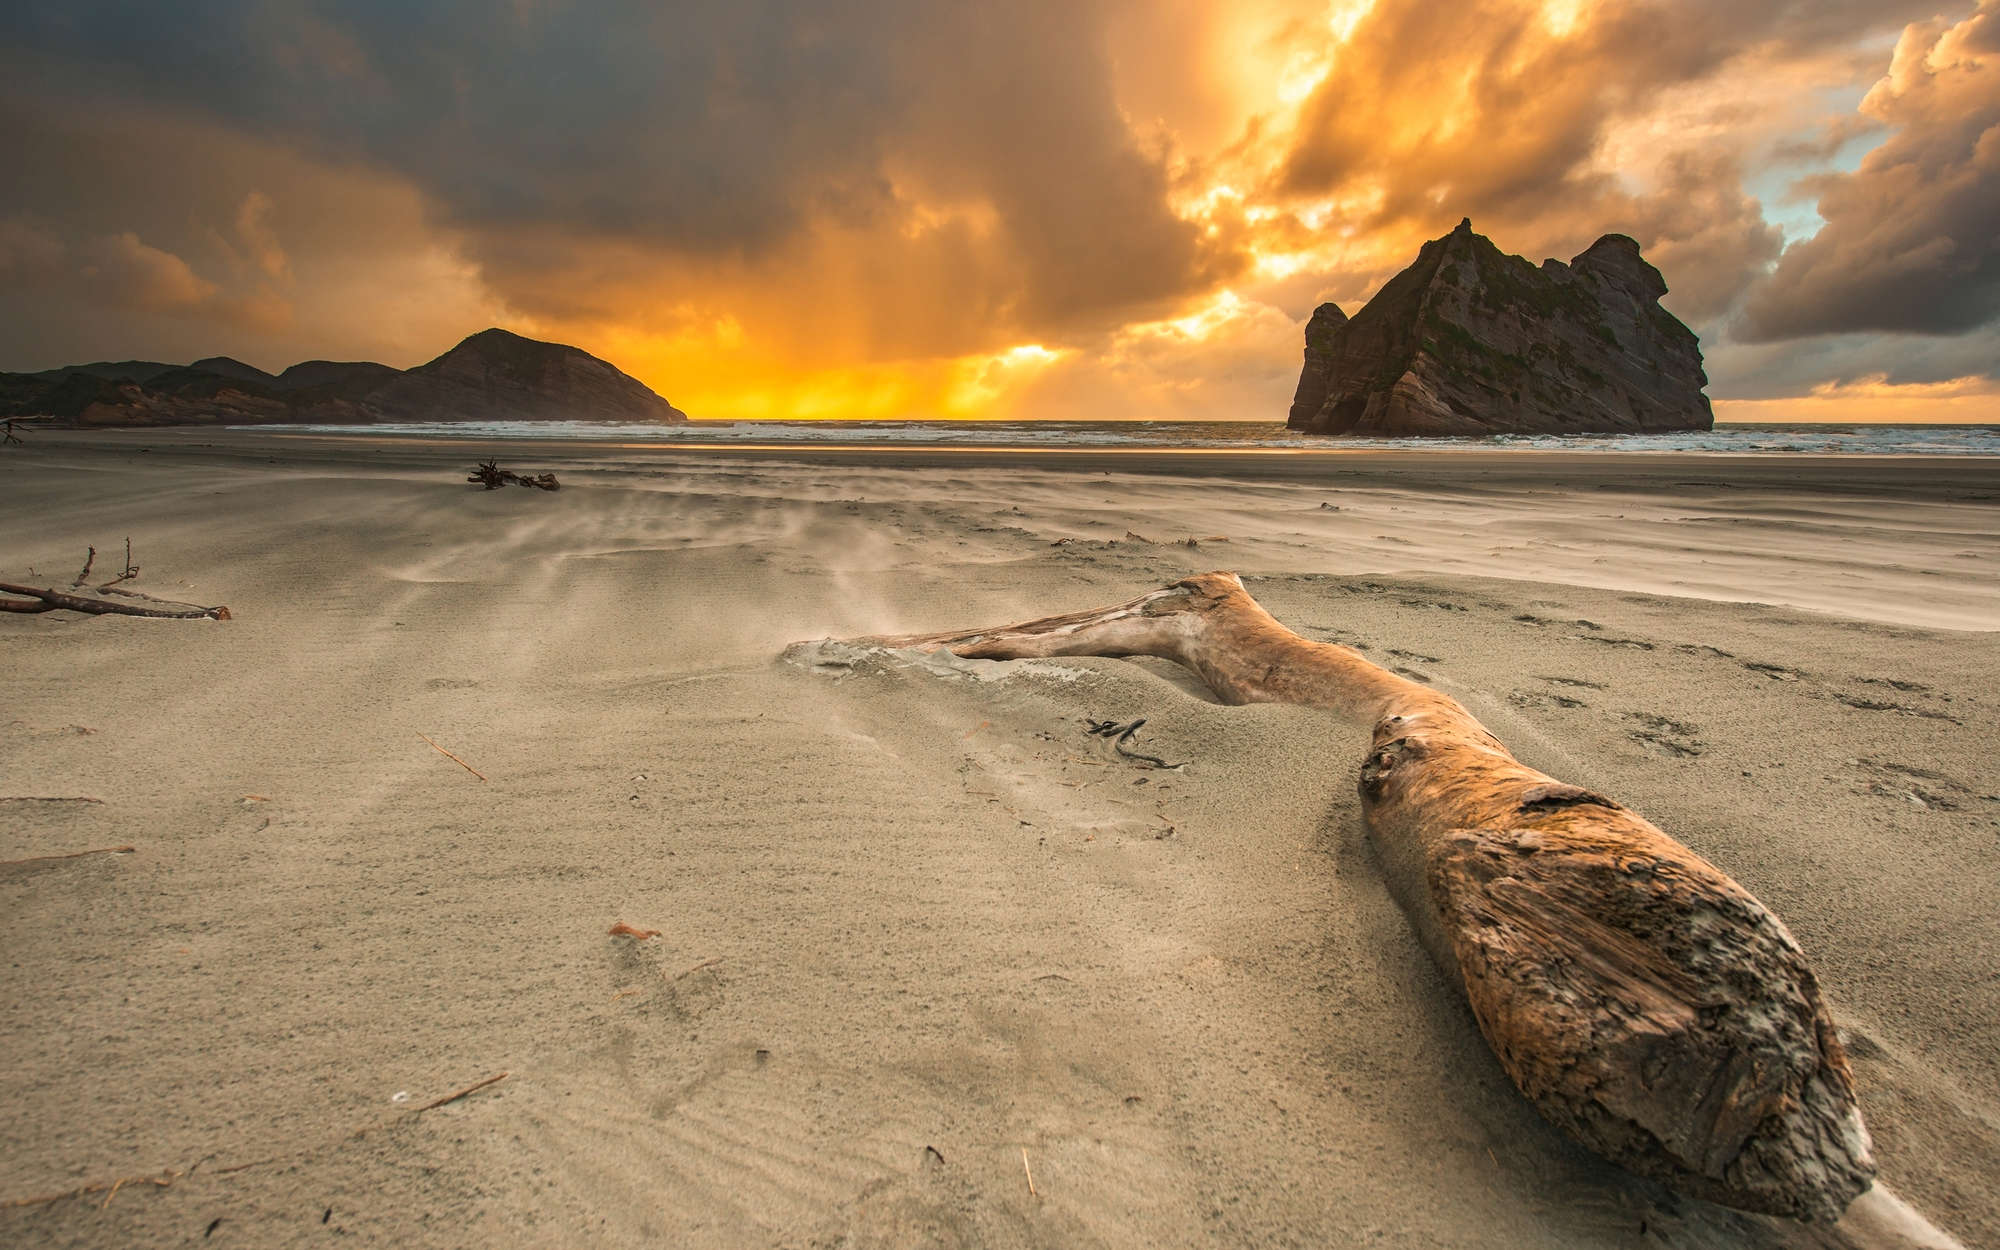             Fototapete Strand in Neuseeland – Strukturiertes Vlies
        